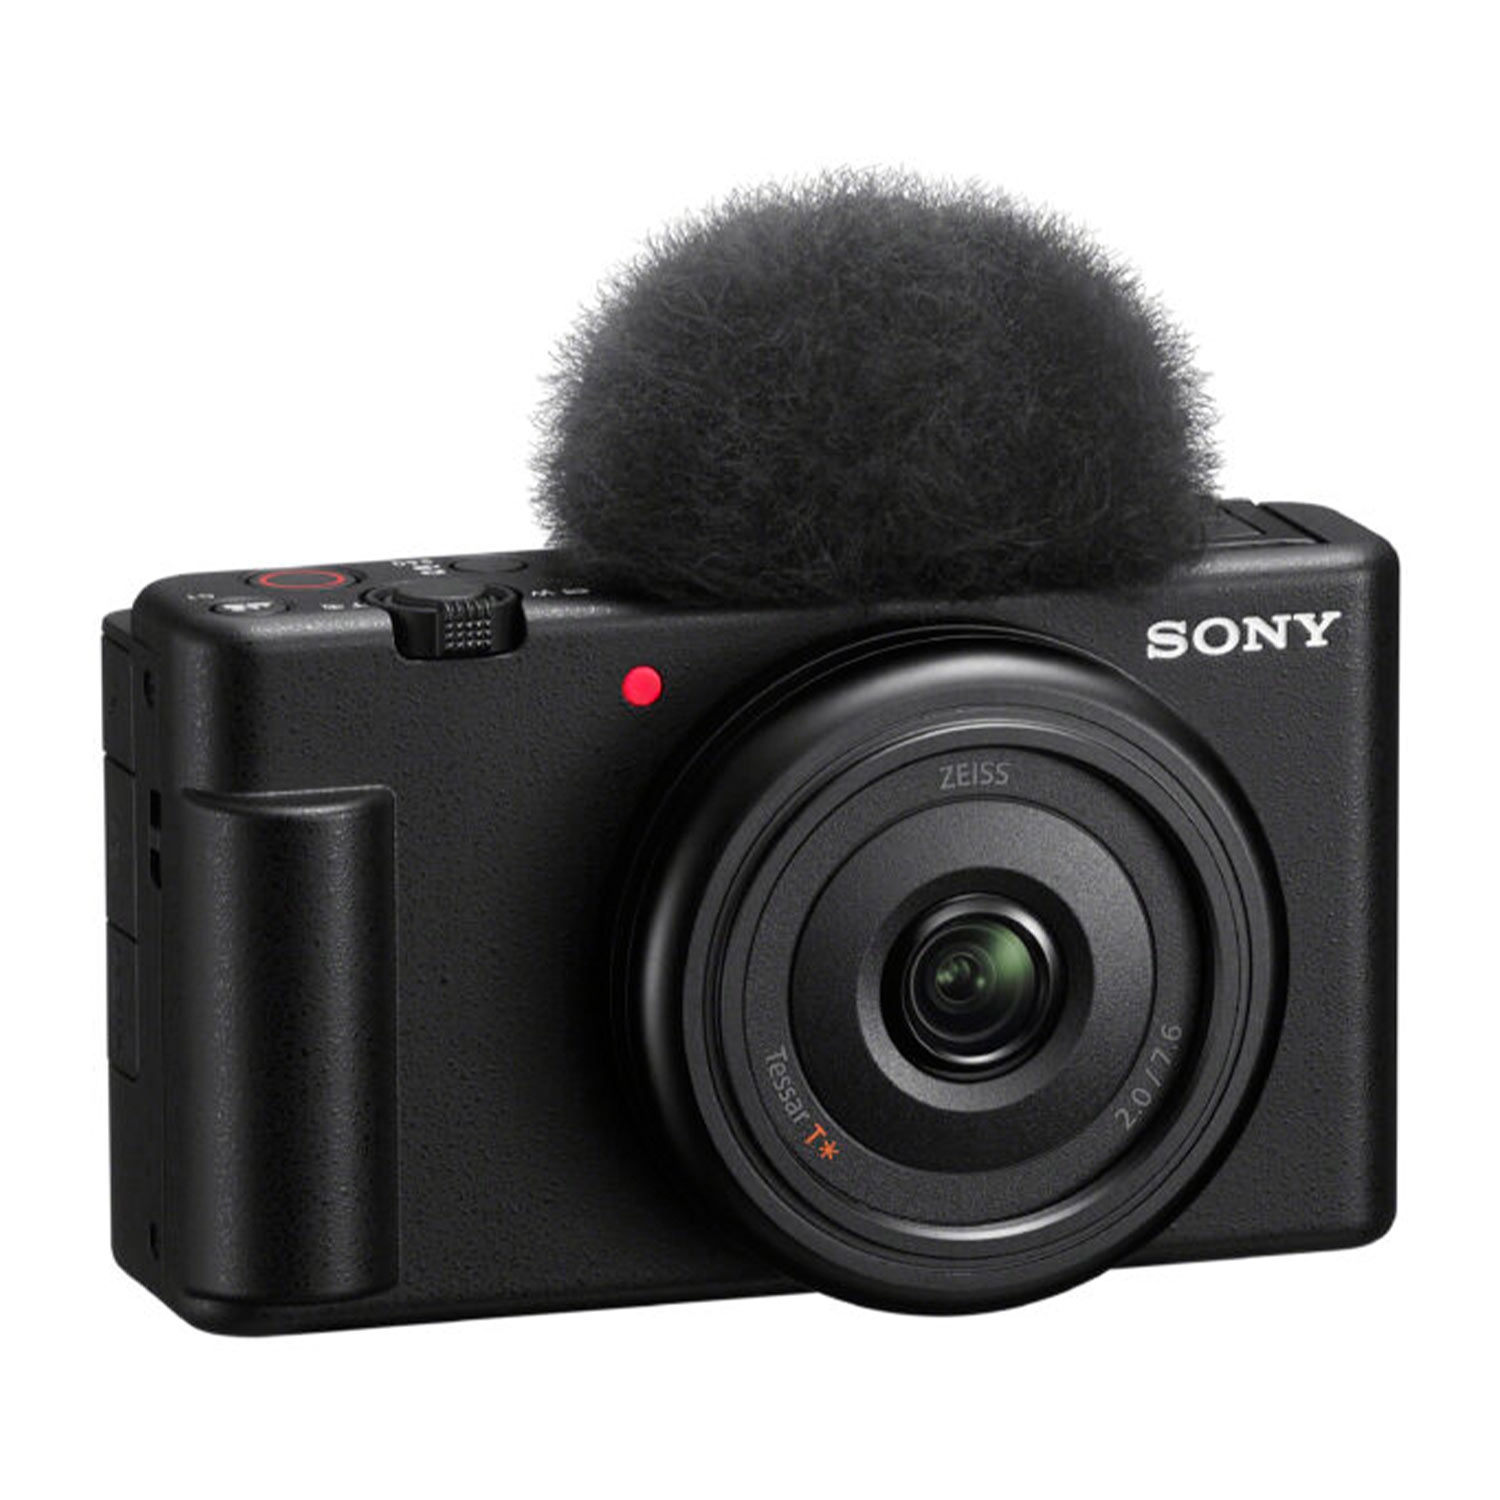 Sony ZV-1F Vlogging-Kamera + Sony GP-VPT2BT Handgriff